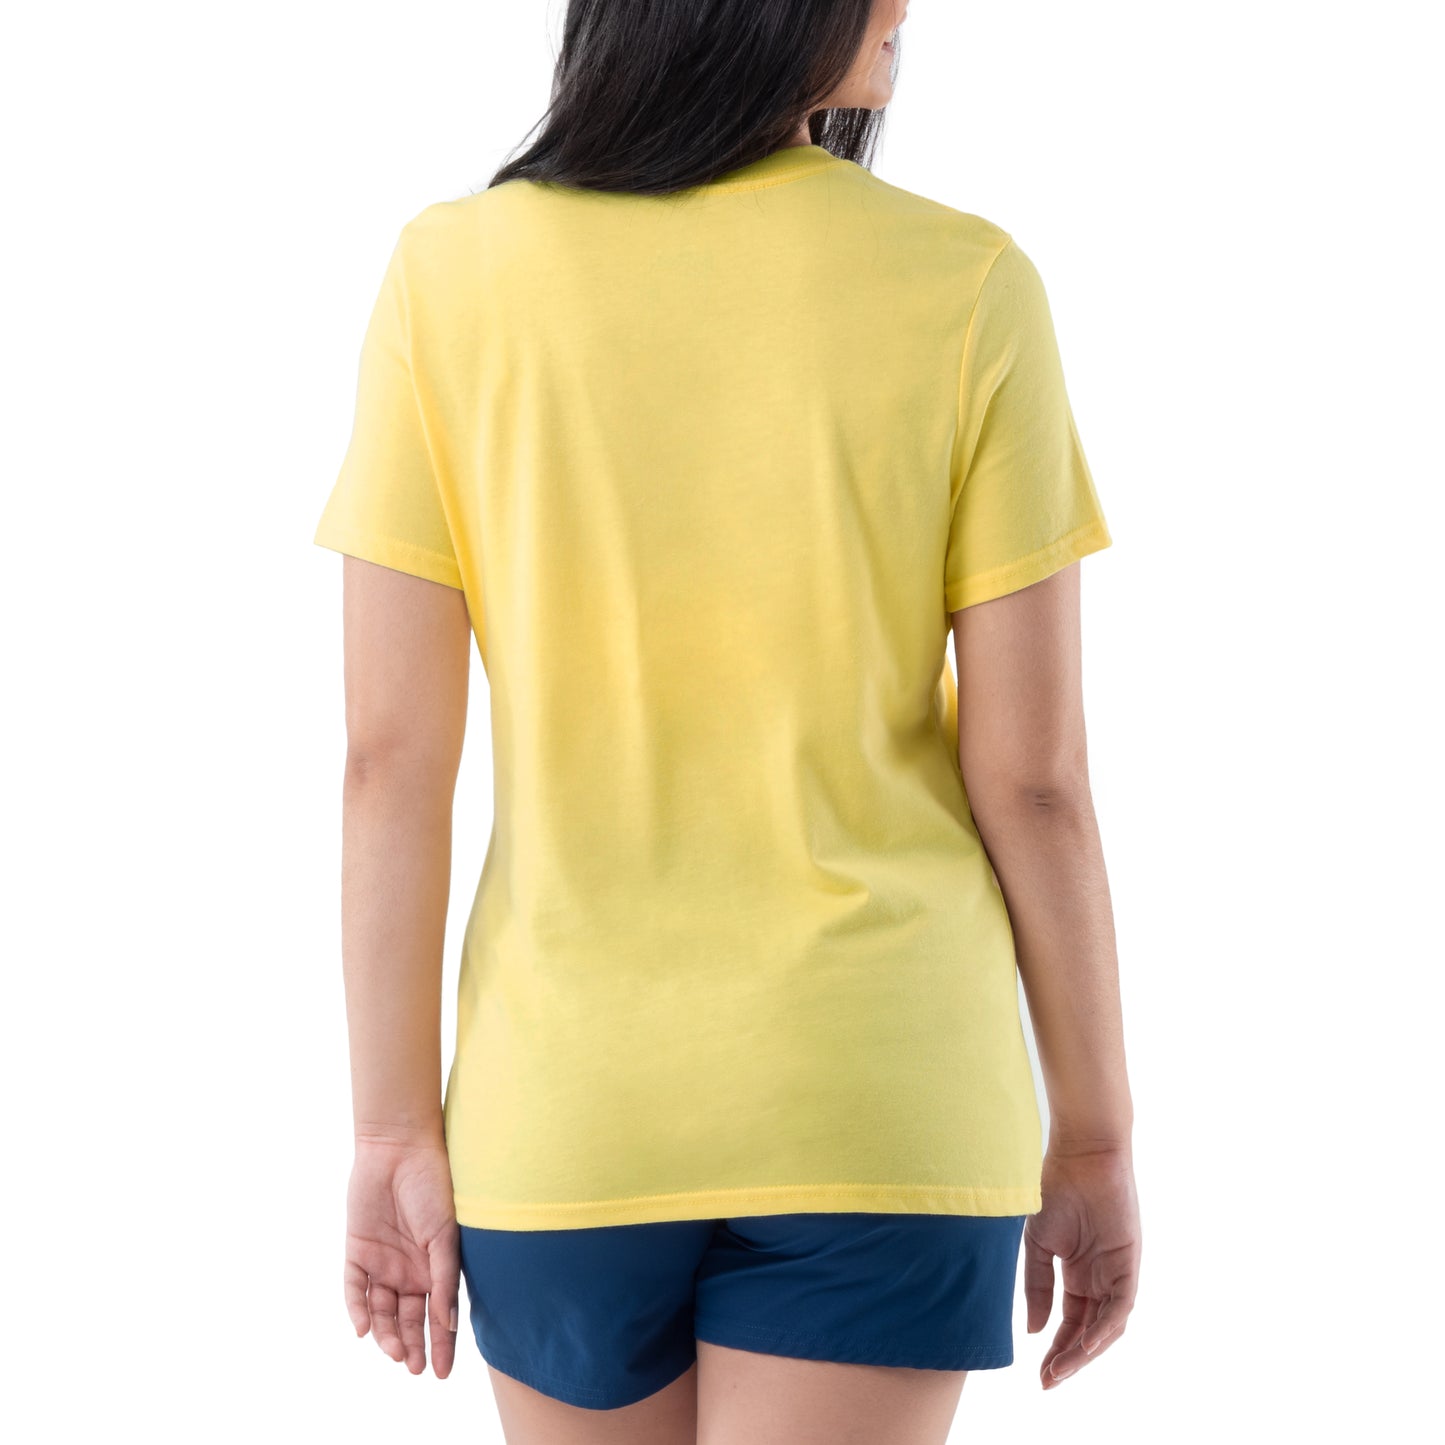 Ladies Turtle Reef Short Sleeve T-Shirt